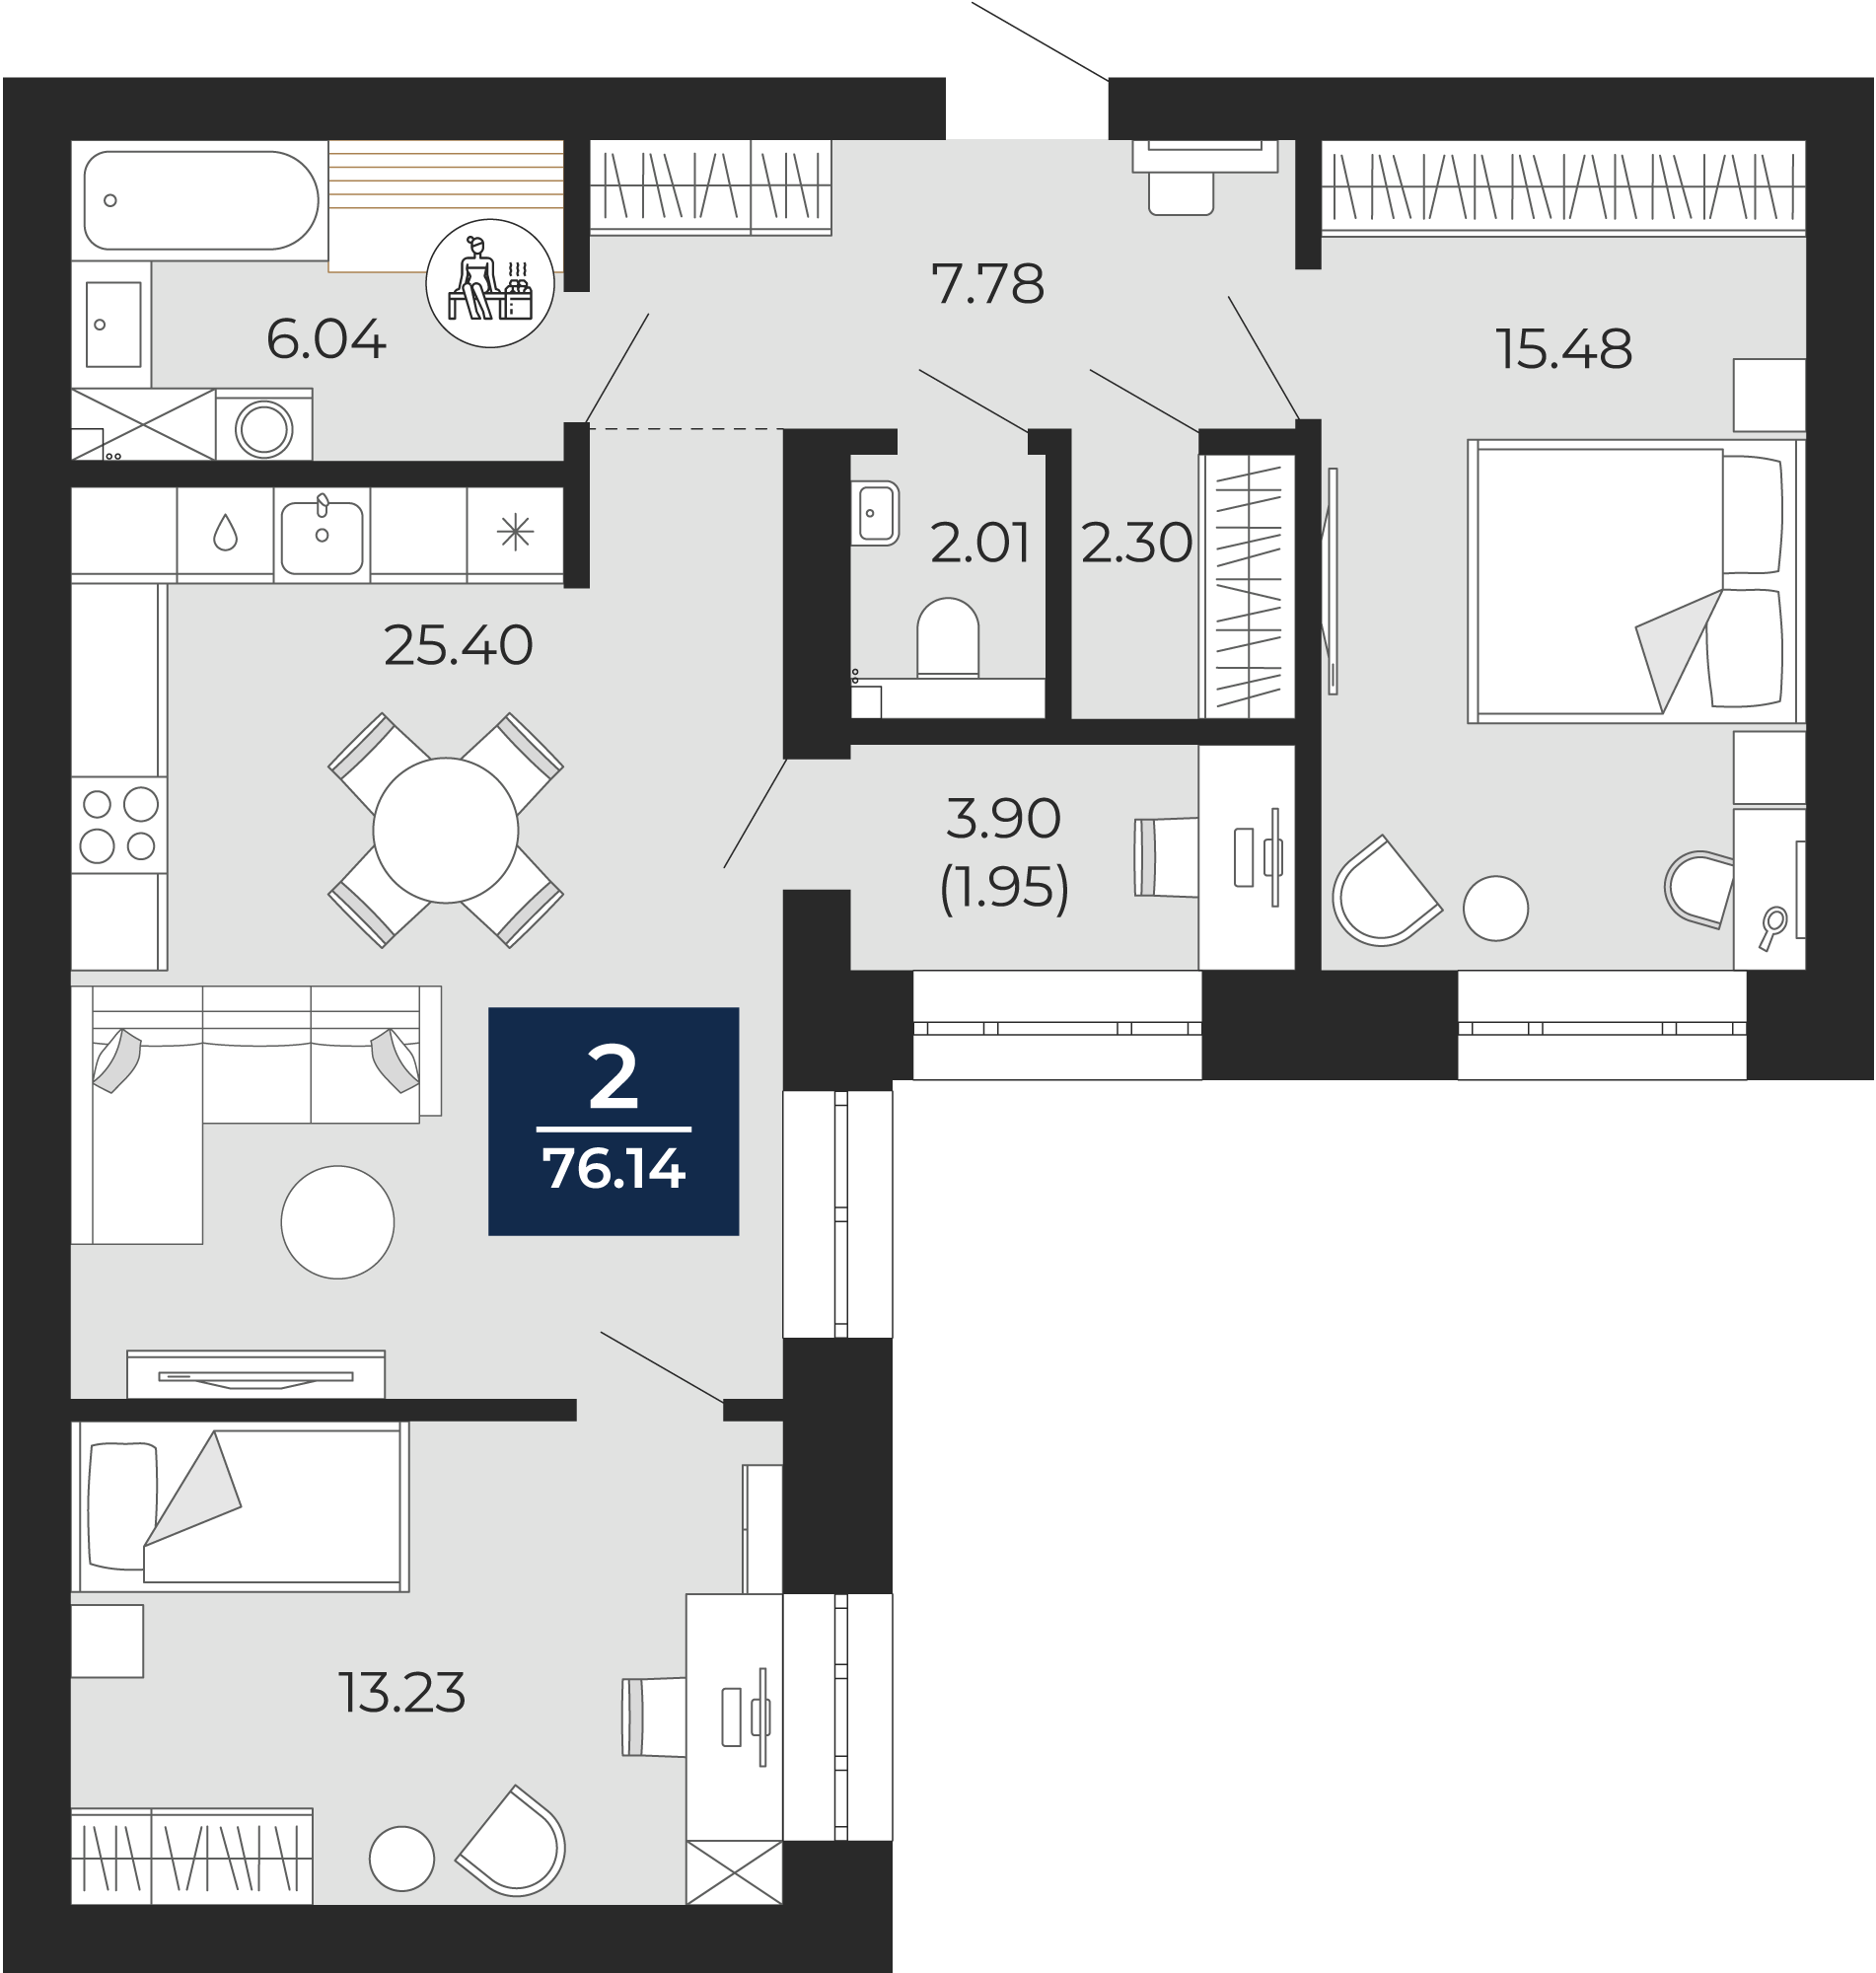 Квартира № 57, 2-комнатная, 76.14 кв. м, 3 этаж